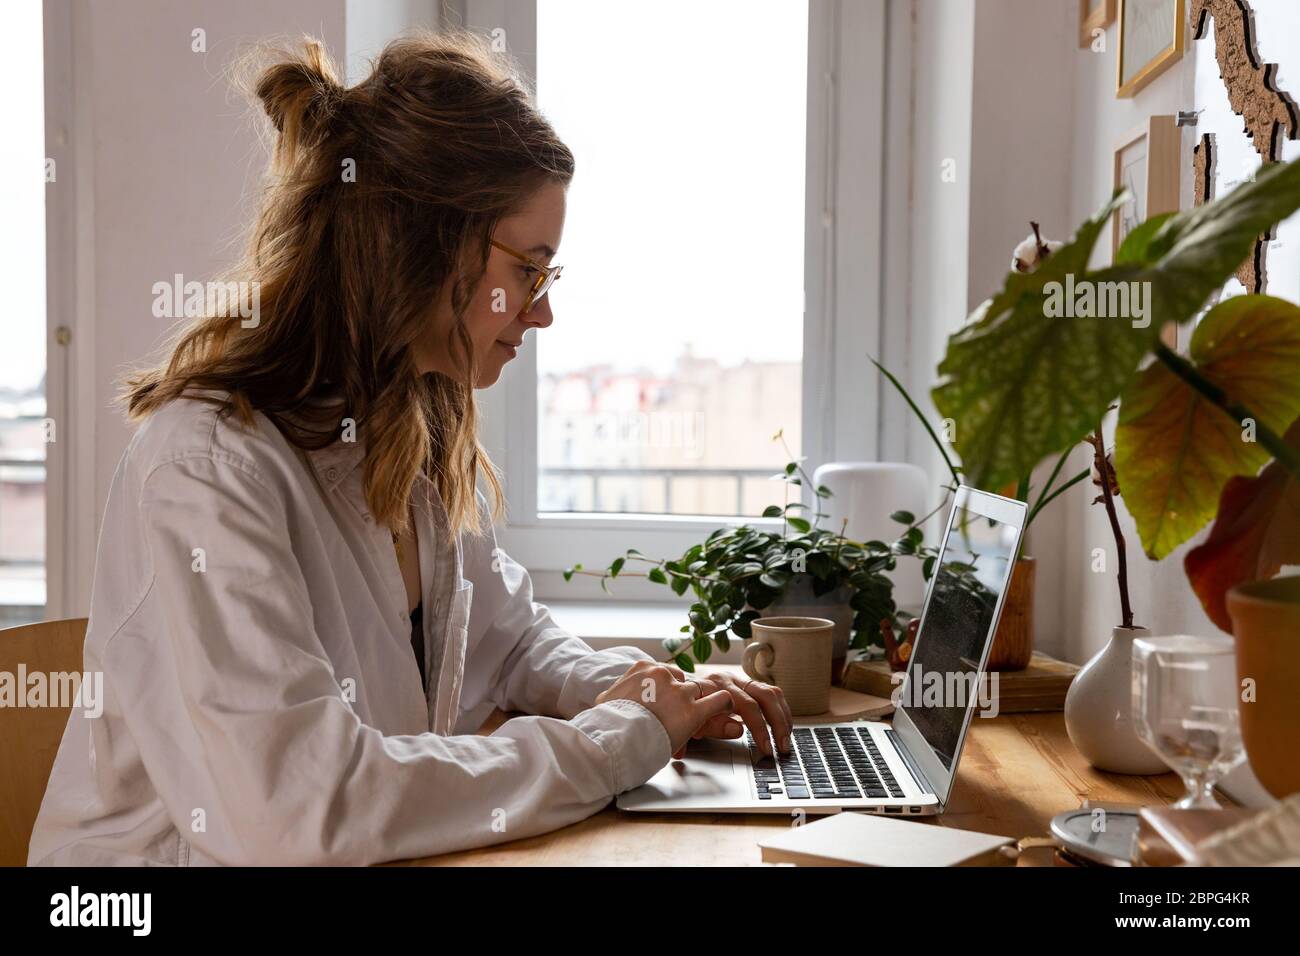 Jeune femme indépendante/designer travaillant sur ordinateur à partir du bureau à domicile pendant l'auto-isolement dû au coronavirus. Espace de travail confortable entouré de plantes. Réf Banque D'Images